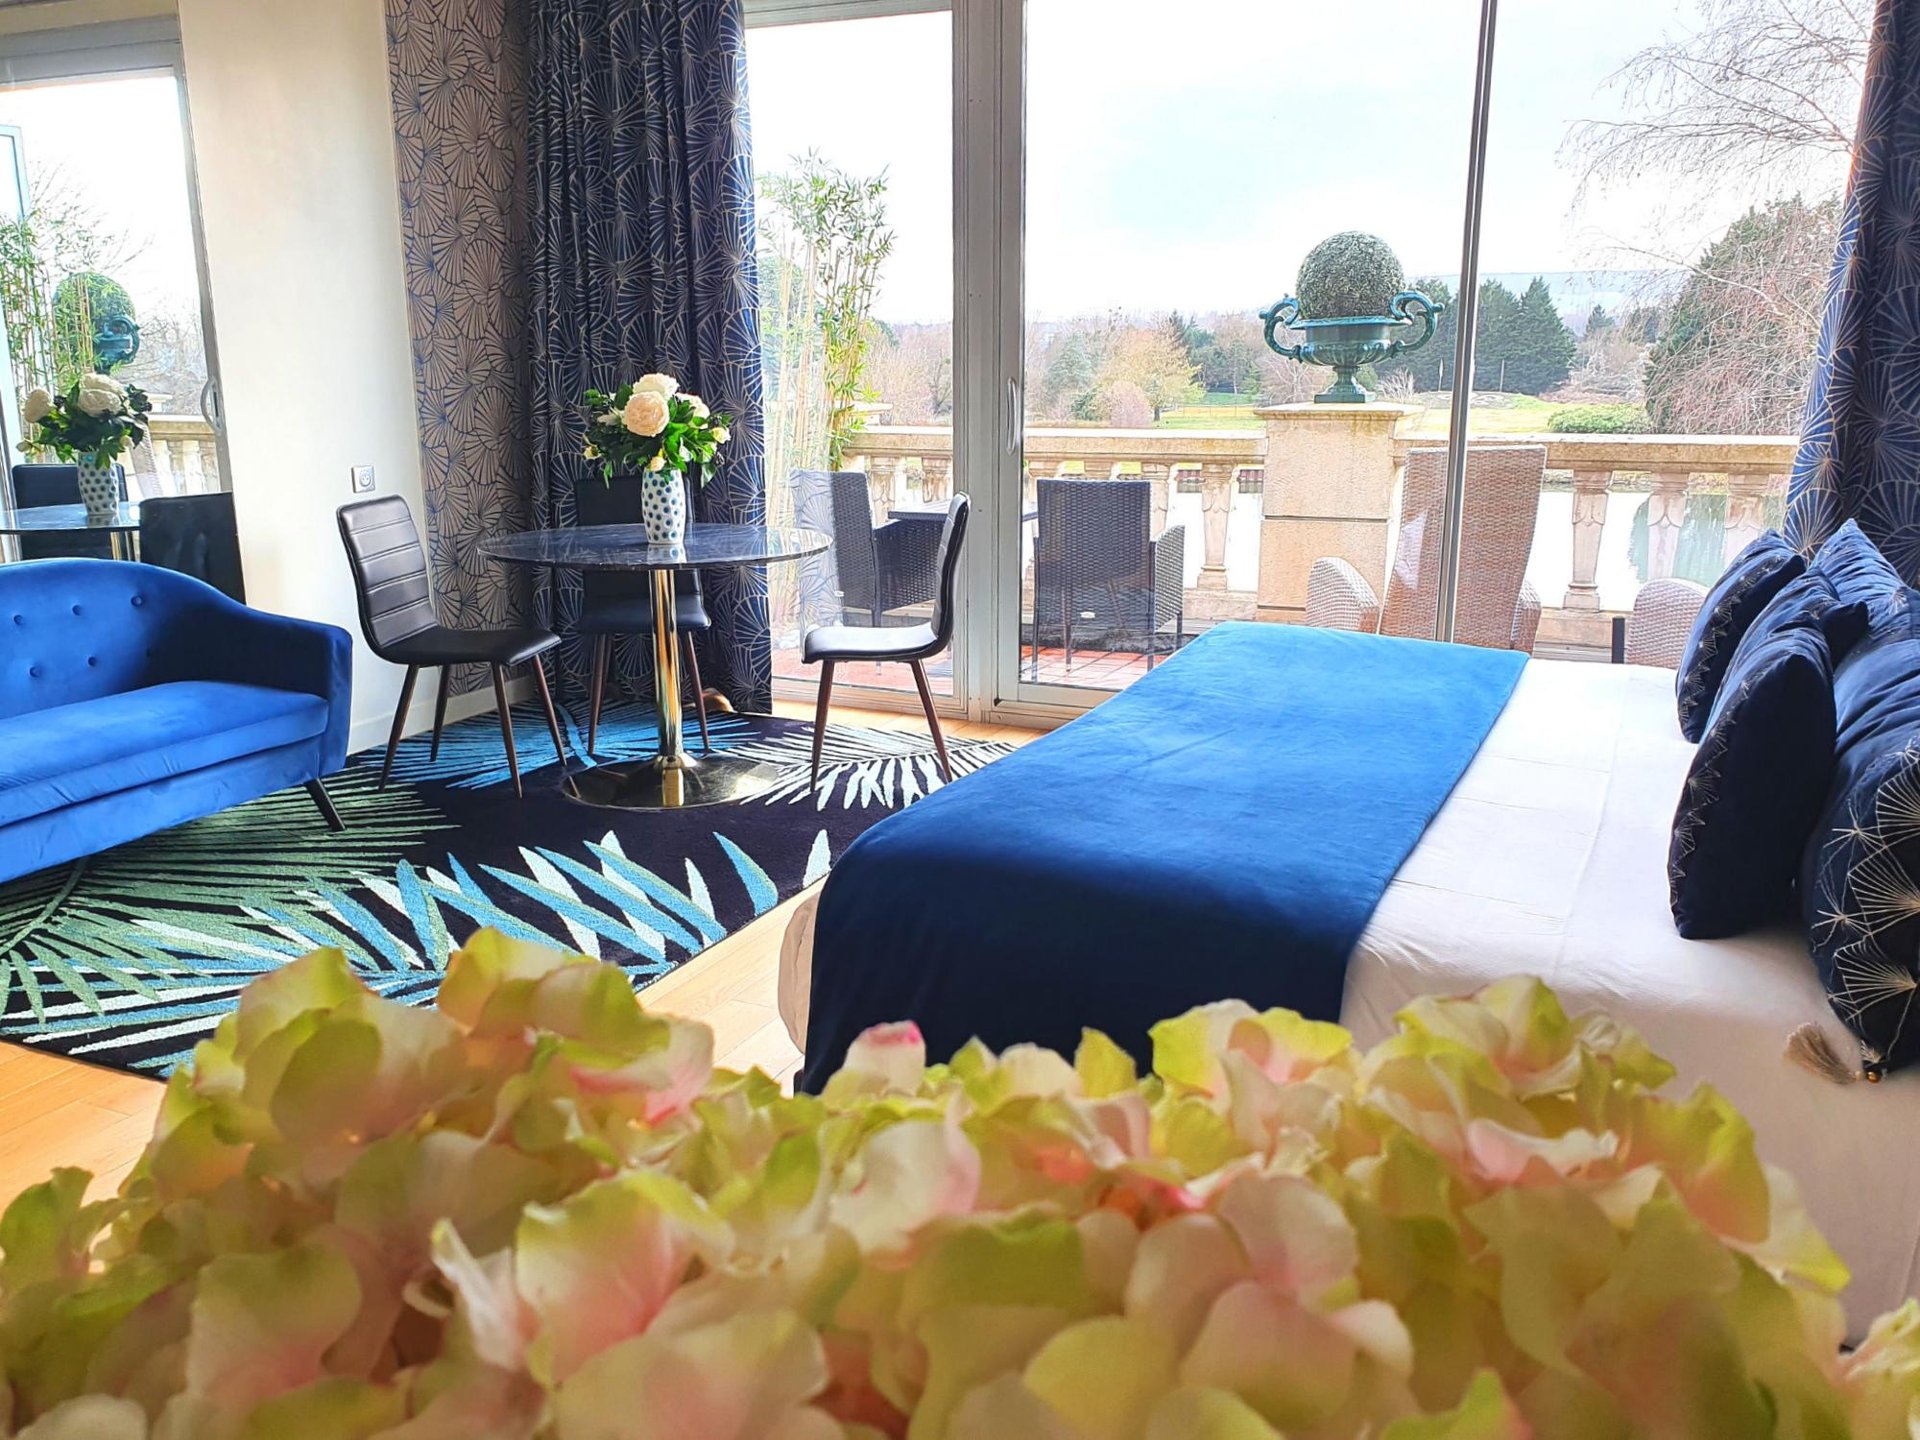 Chambre Deluxe dans notre hôtel 5 étoiles avec vue sur la rivière Yonne en Bourgogne